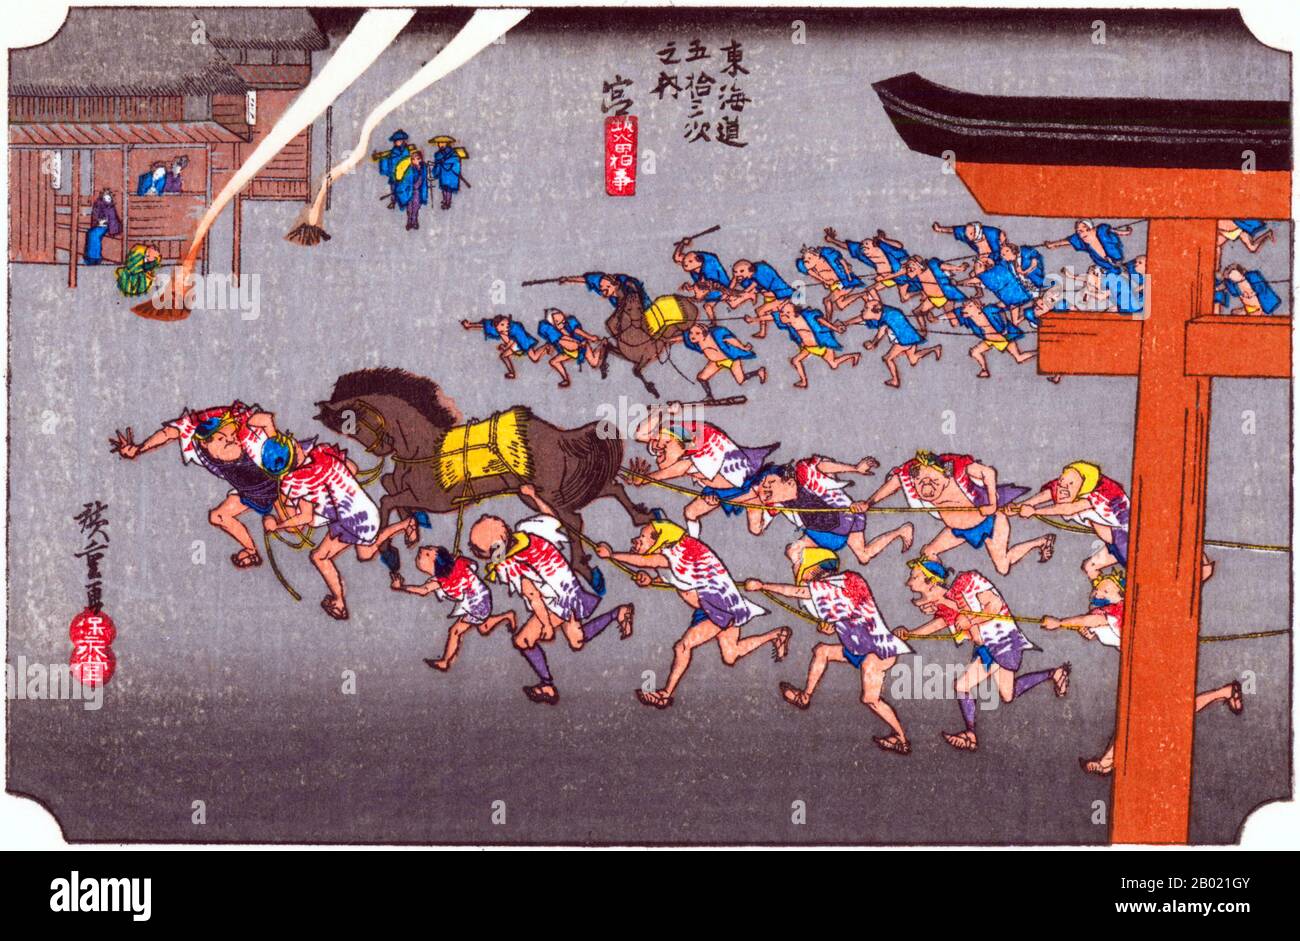 Miya: Due bande di uomini e un cavallo che trascinano una macchina del festival (non mostrato) oltre l'ingresso al Tempio di Miya in un giorno fête. Il nome Miya significa letteralmente "shrine", ed è una parola abbreviata che indica il Santuario di Atsuta. È uno dei santuari più importanti del paese perché detiene uno dei tre simboli divini del trono imperiale giapponese. Ora la città di Nagoya è cresciuta intorno al santuario per diventare la terza metropoli più grande del Giappone. Utagawa Hiroshige (歌川 広重, 1797 – 12 ottobre 1858) è stato un . Egli è stato anche riferito t Foto Stock